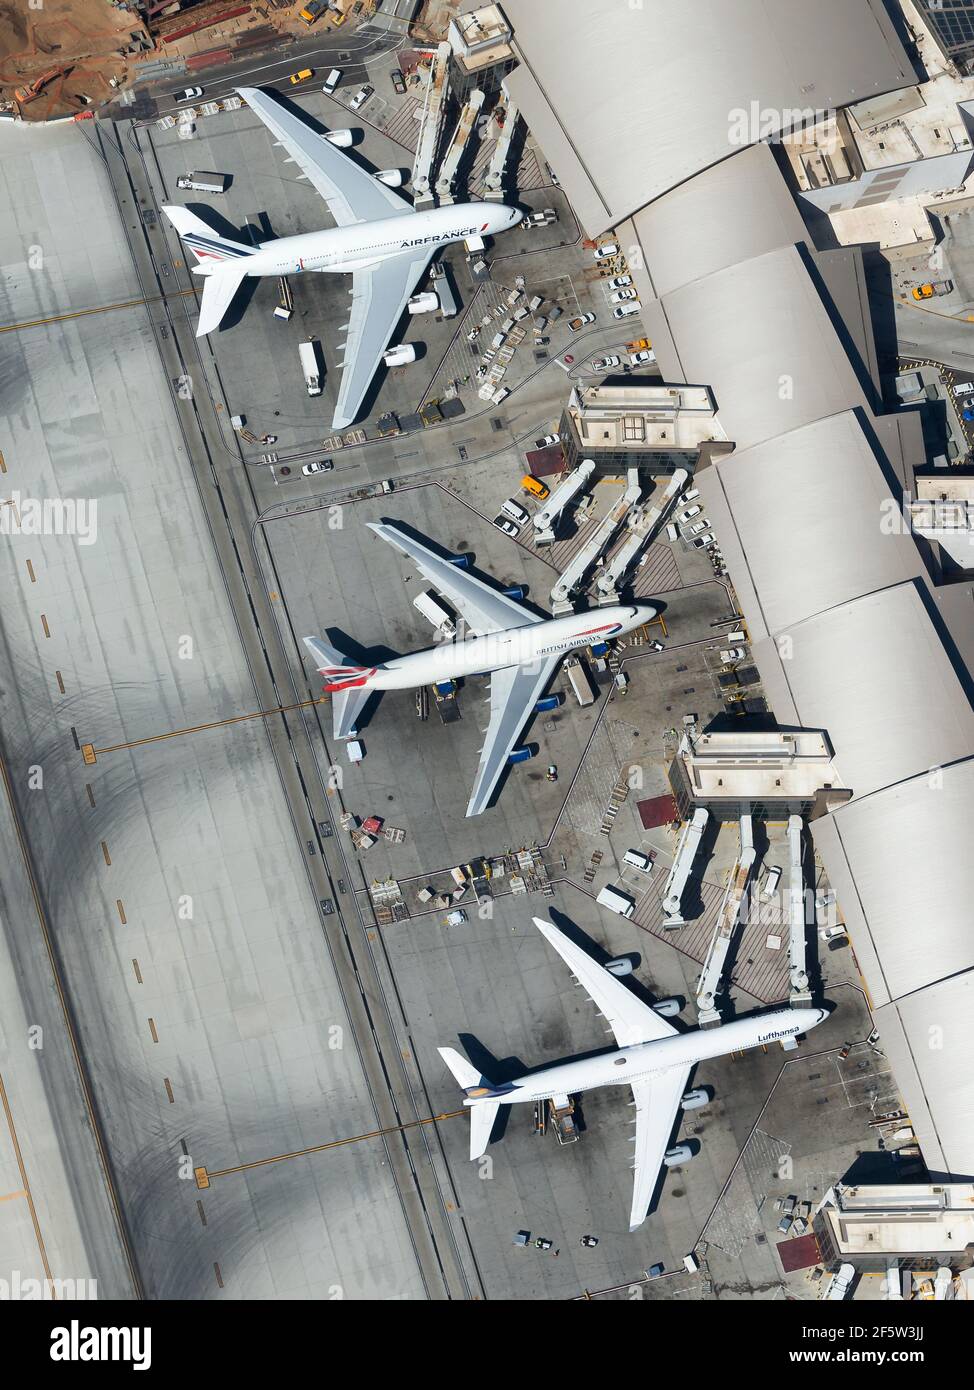 Drei Quadrijets-Flugzeuge nebeneinander. Luftaufnahme des Tom Bradley International Terminal (TBIT Terminal) am LAX Airport. Vier-Triebwerke-Flugzeuge. Stockfoto